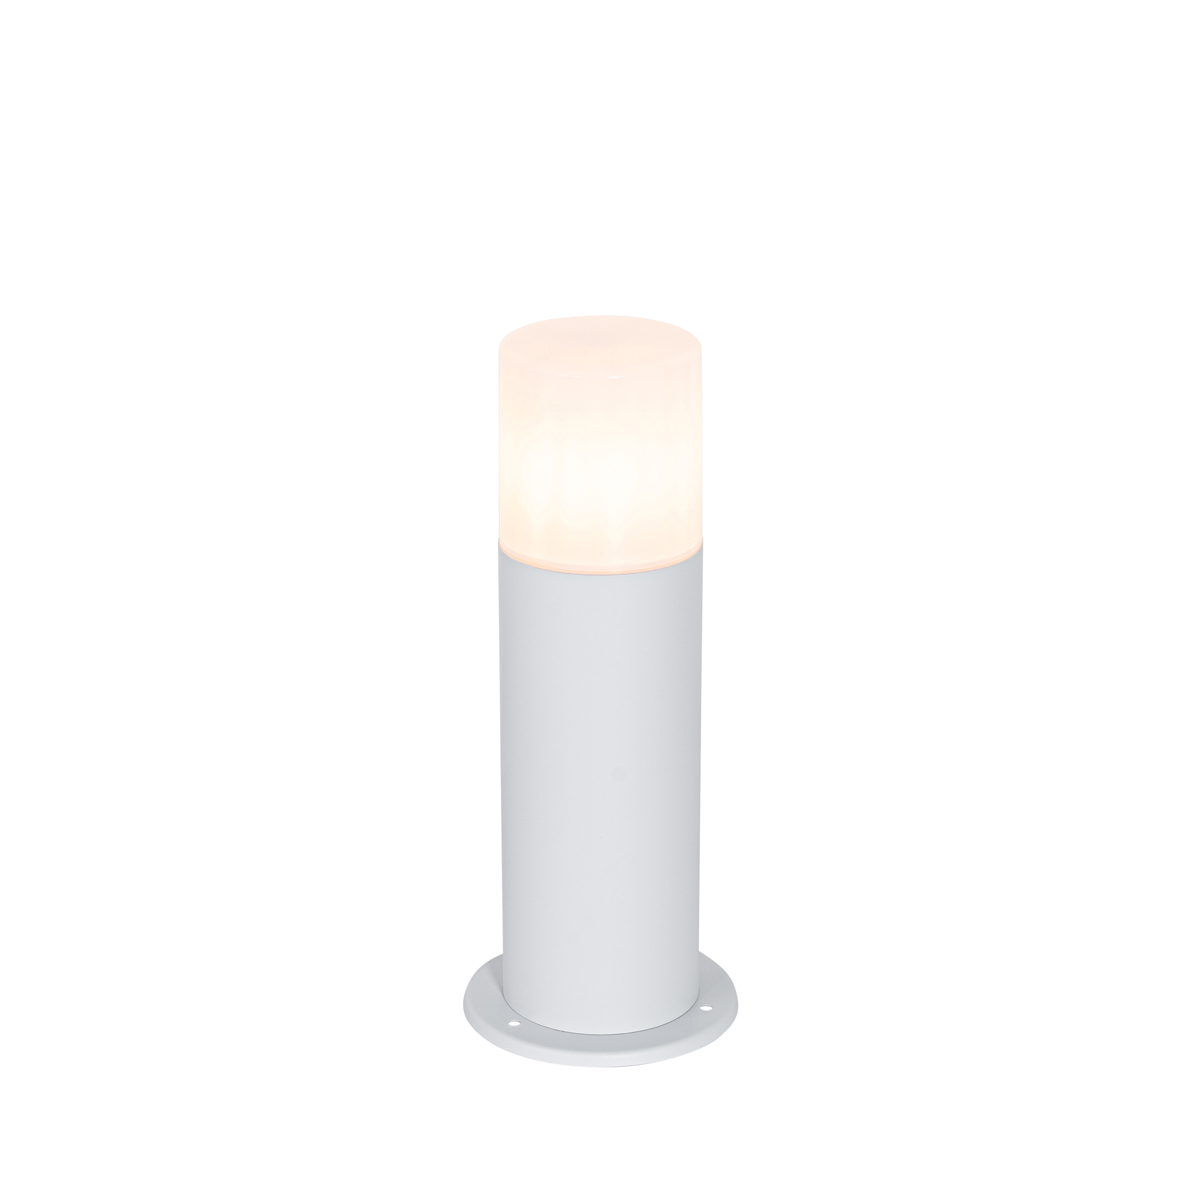 QAZQA Staande buitenlamp wit met opaal witte kap 30 cm IP44 - Odense